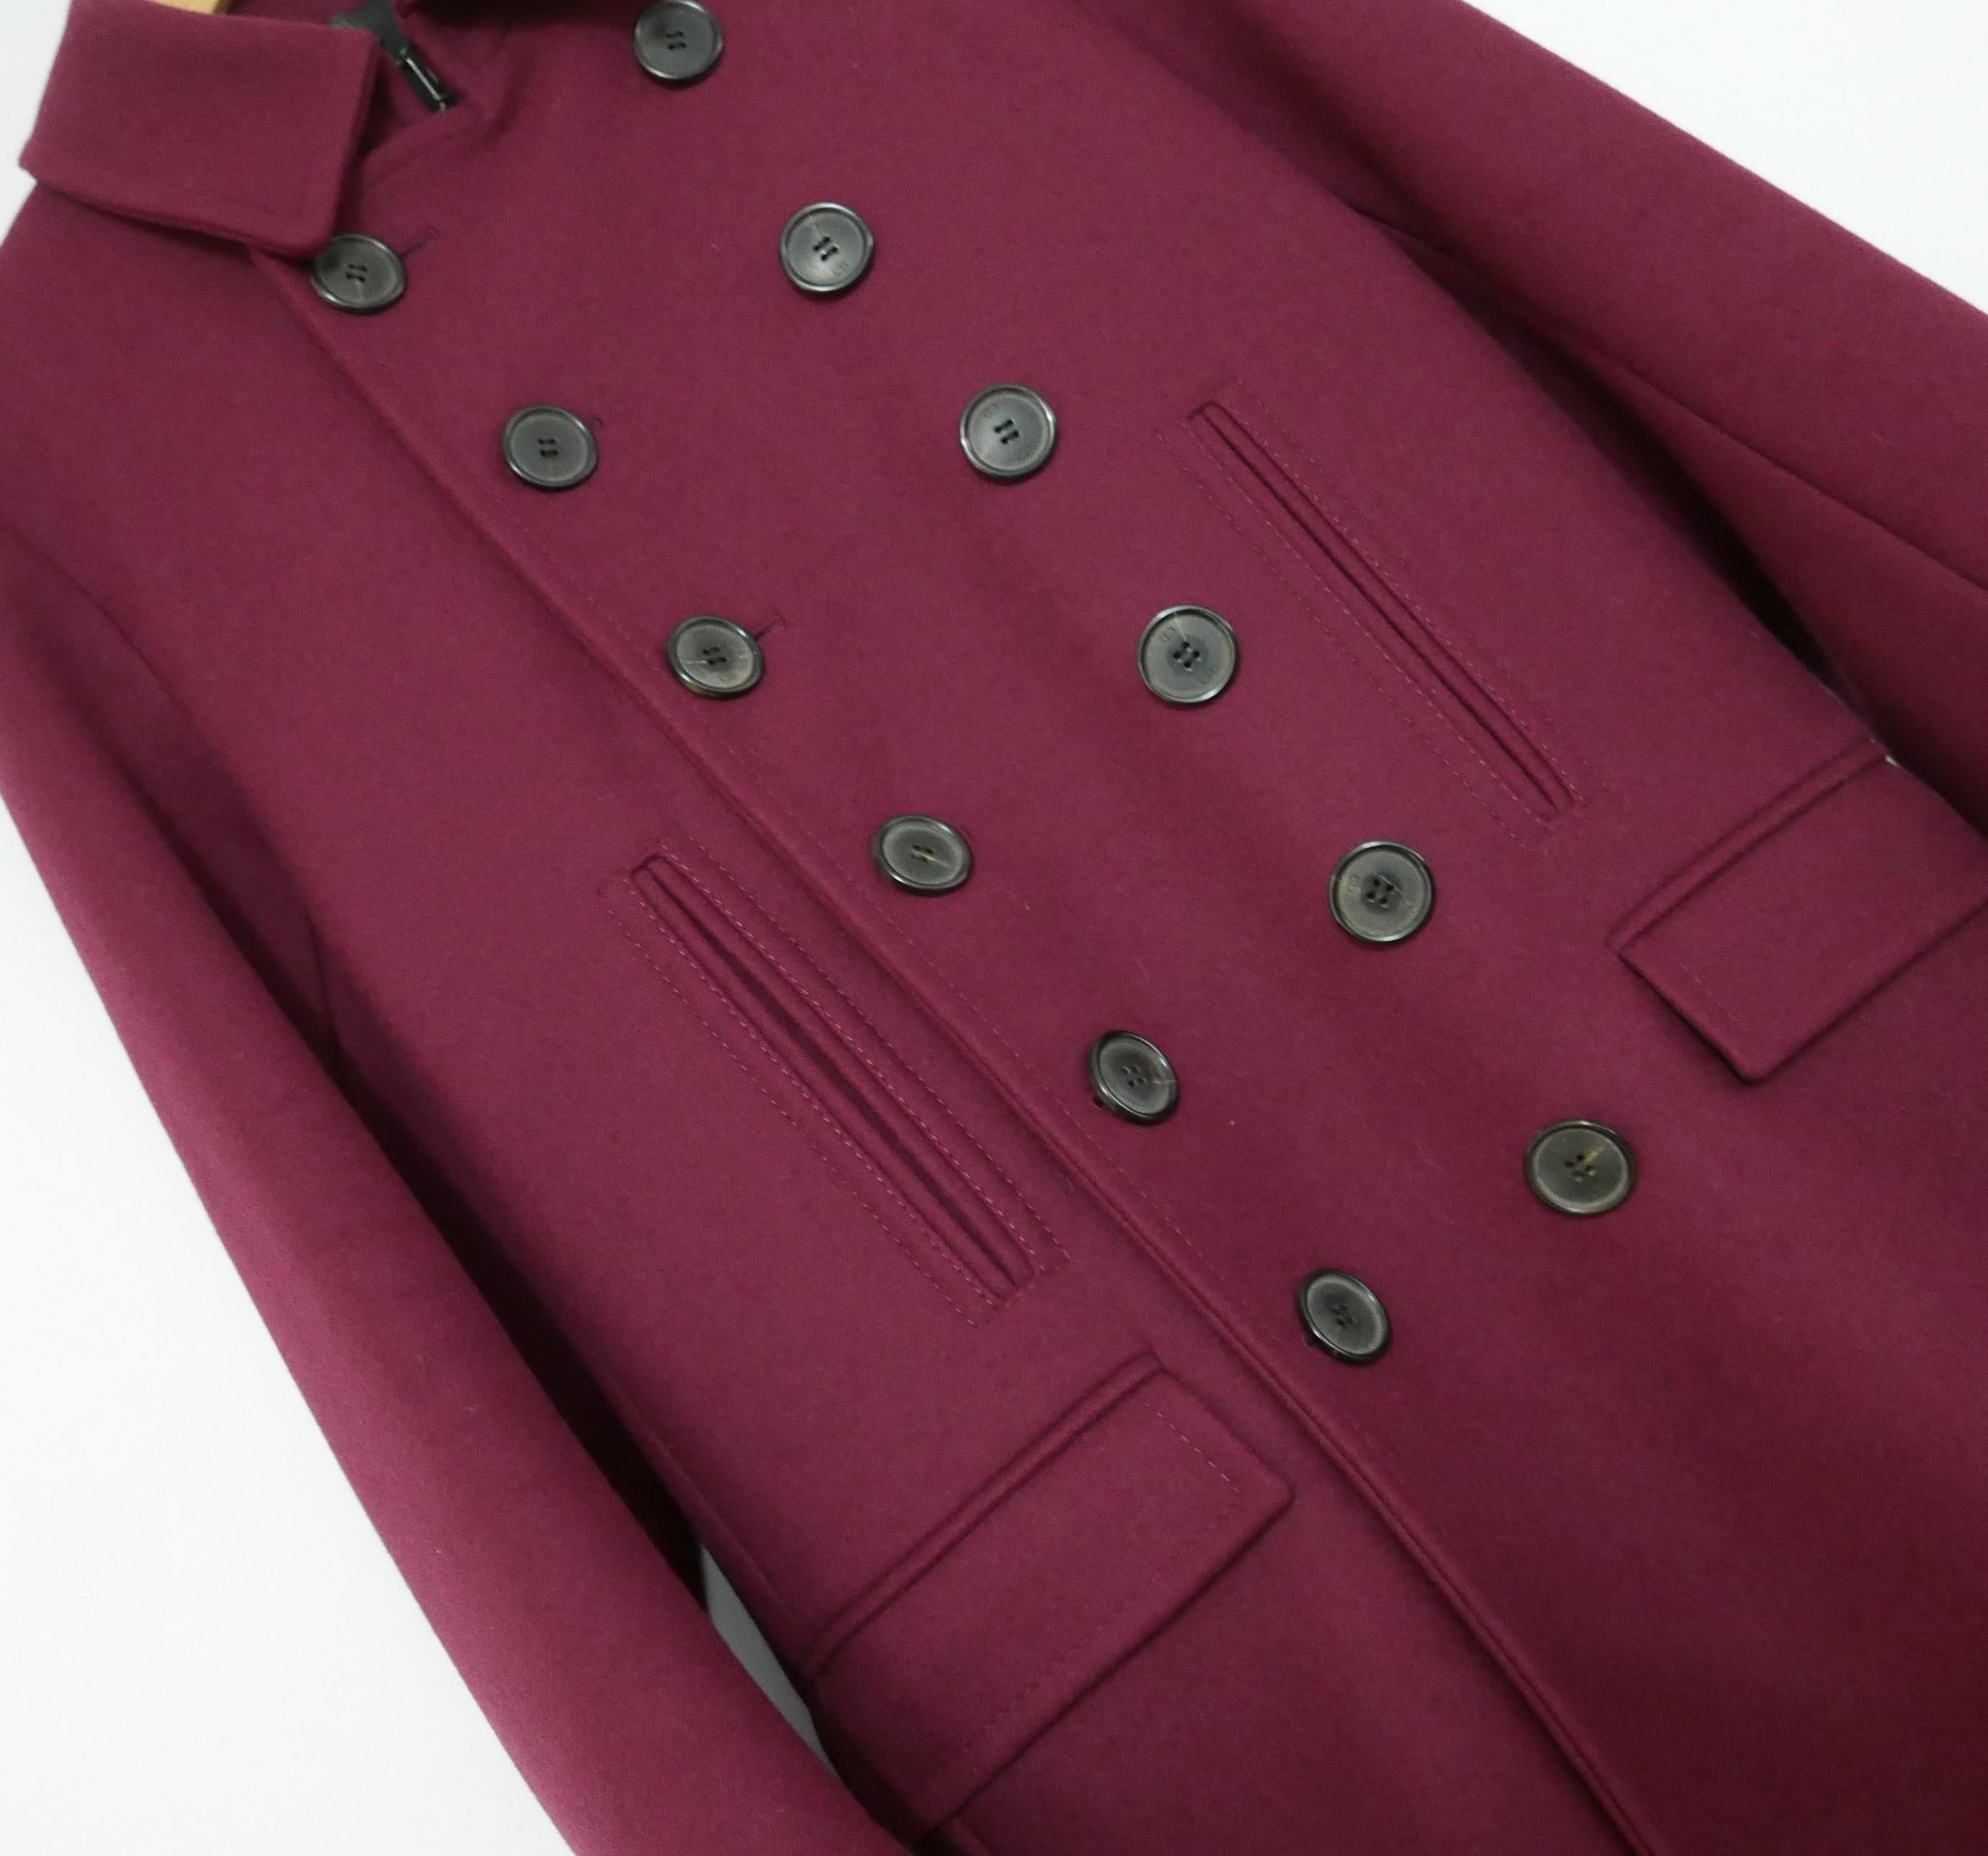 Manteau de luxe superbement confectionné, issu de la Collection Dior Homme Automne 2013. Acheté pour plus de 2 500 livres sterling, il n'a jamais été porté. Fabriqué en laine épaisse bordeaux avec une doublure en satin noir. Il présente un devant